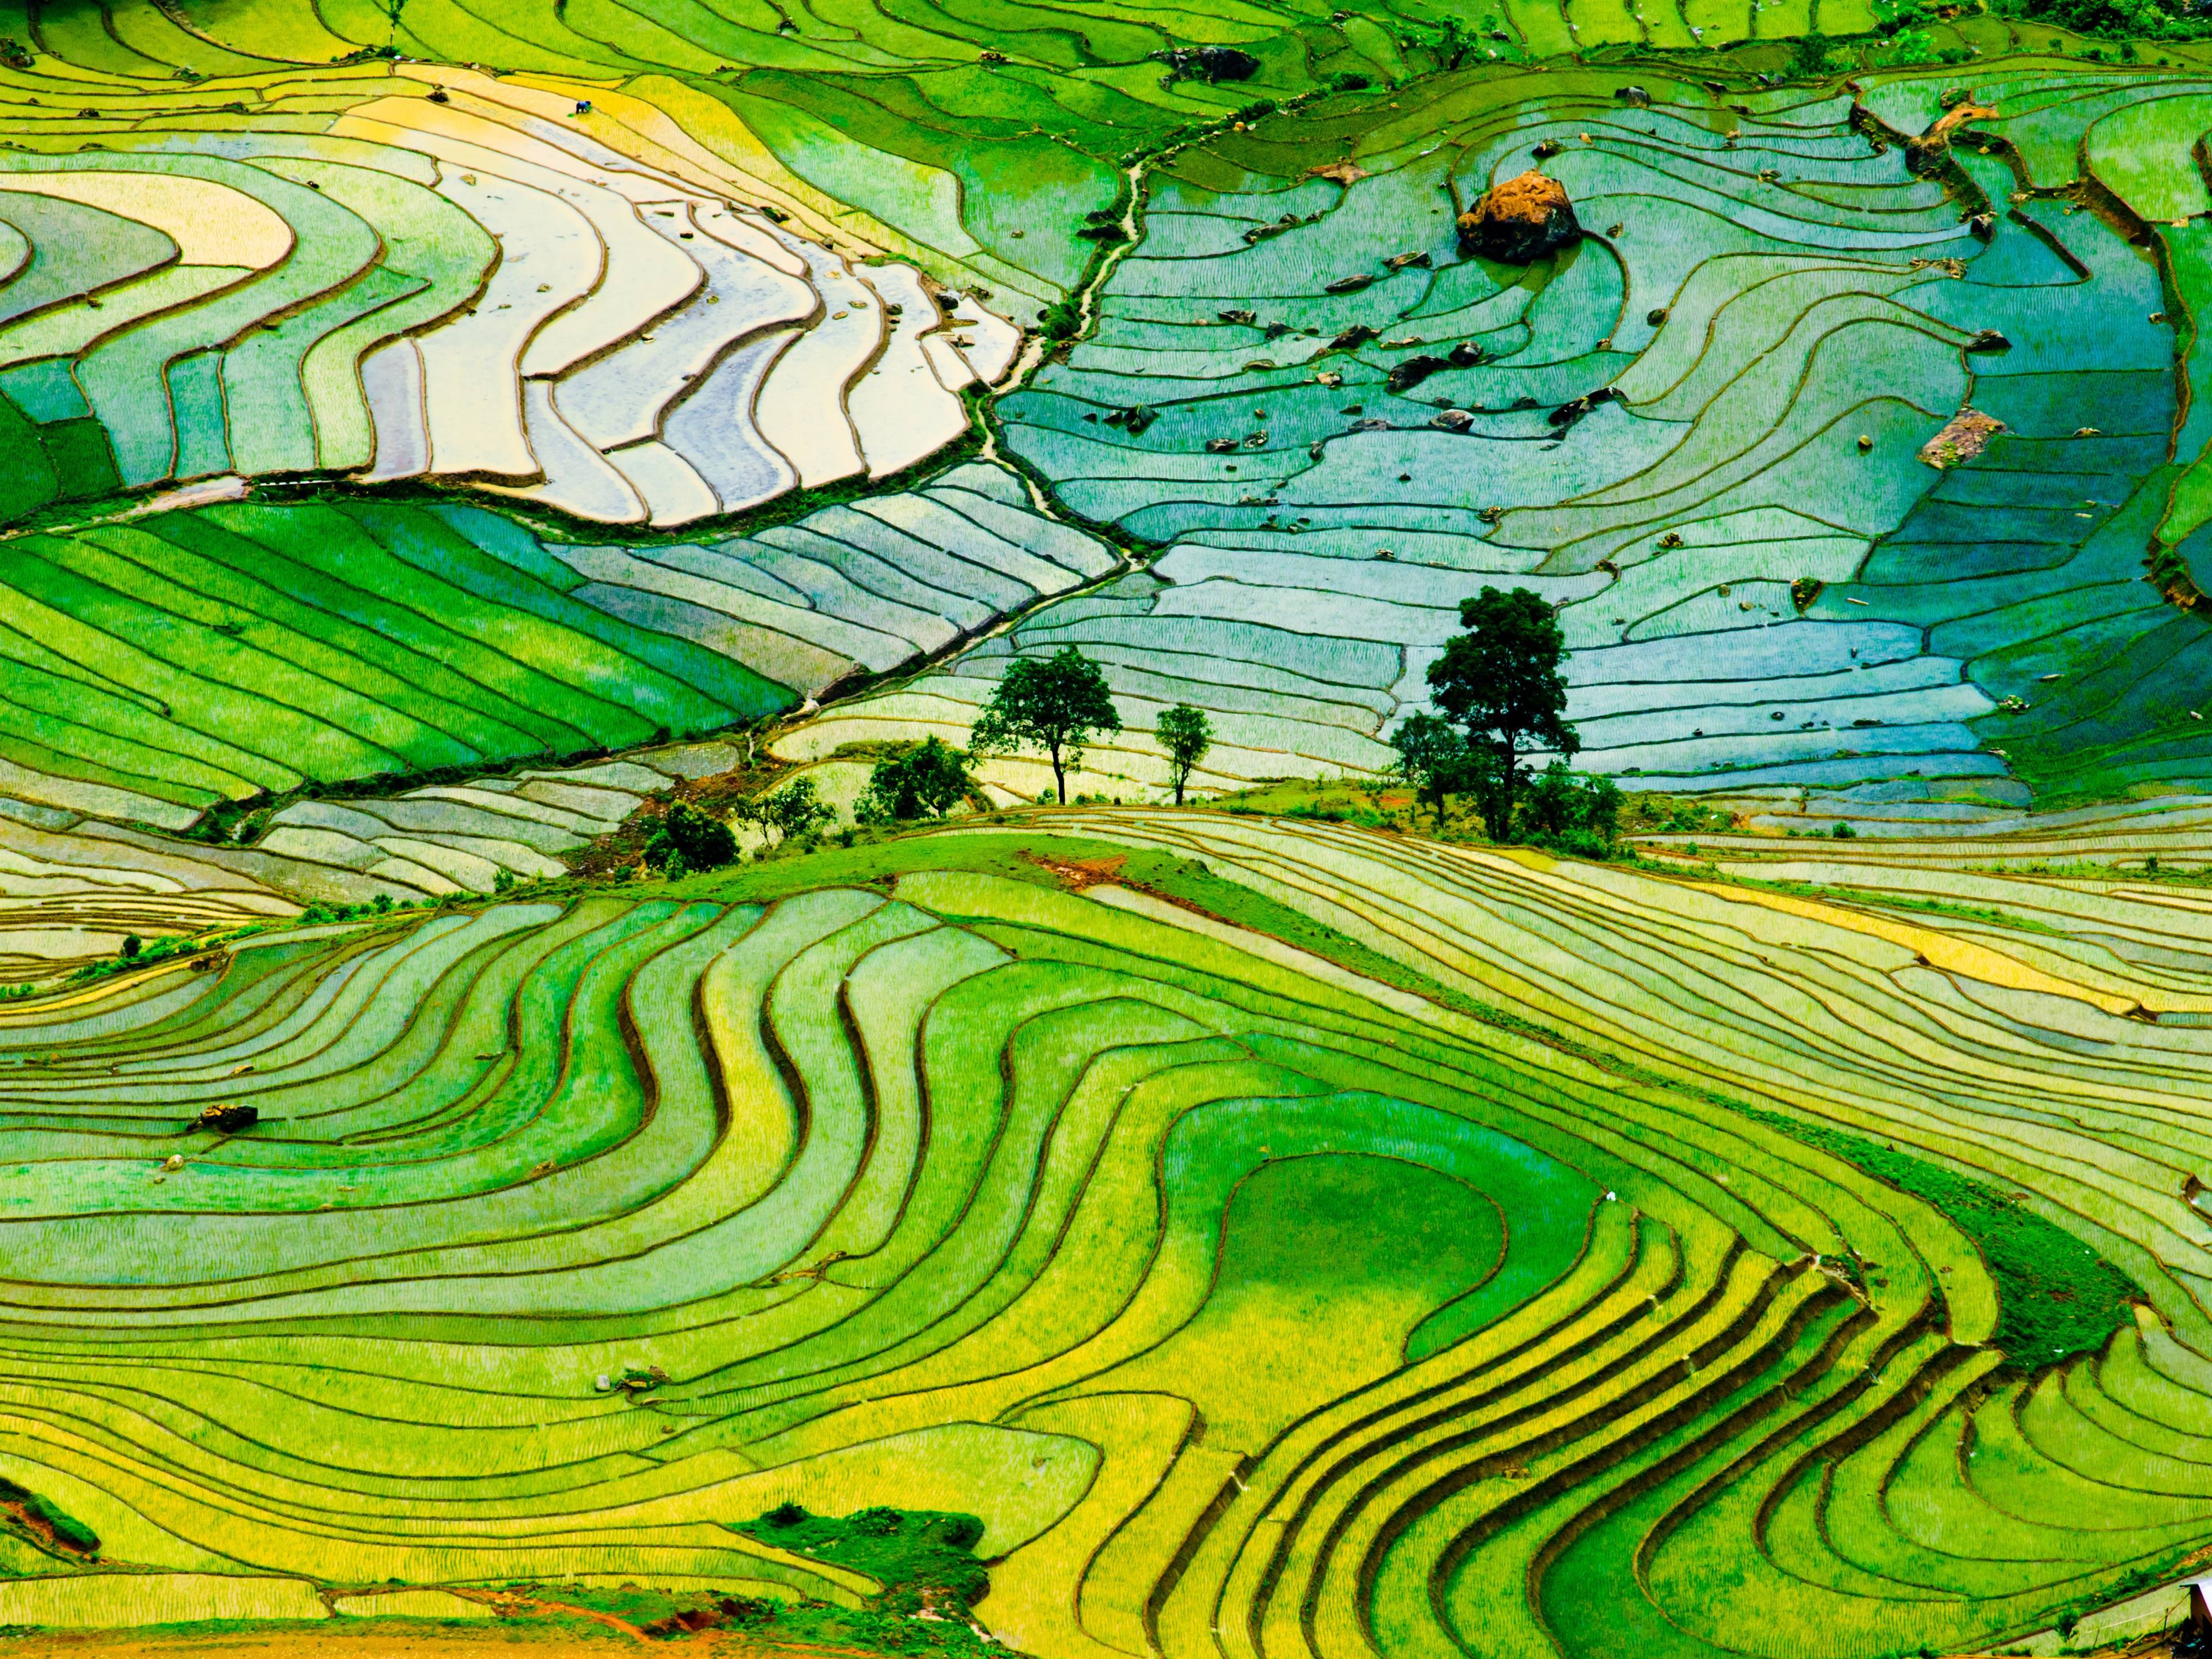 Les rizières en terrasse dans le nord du Vietnam